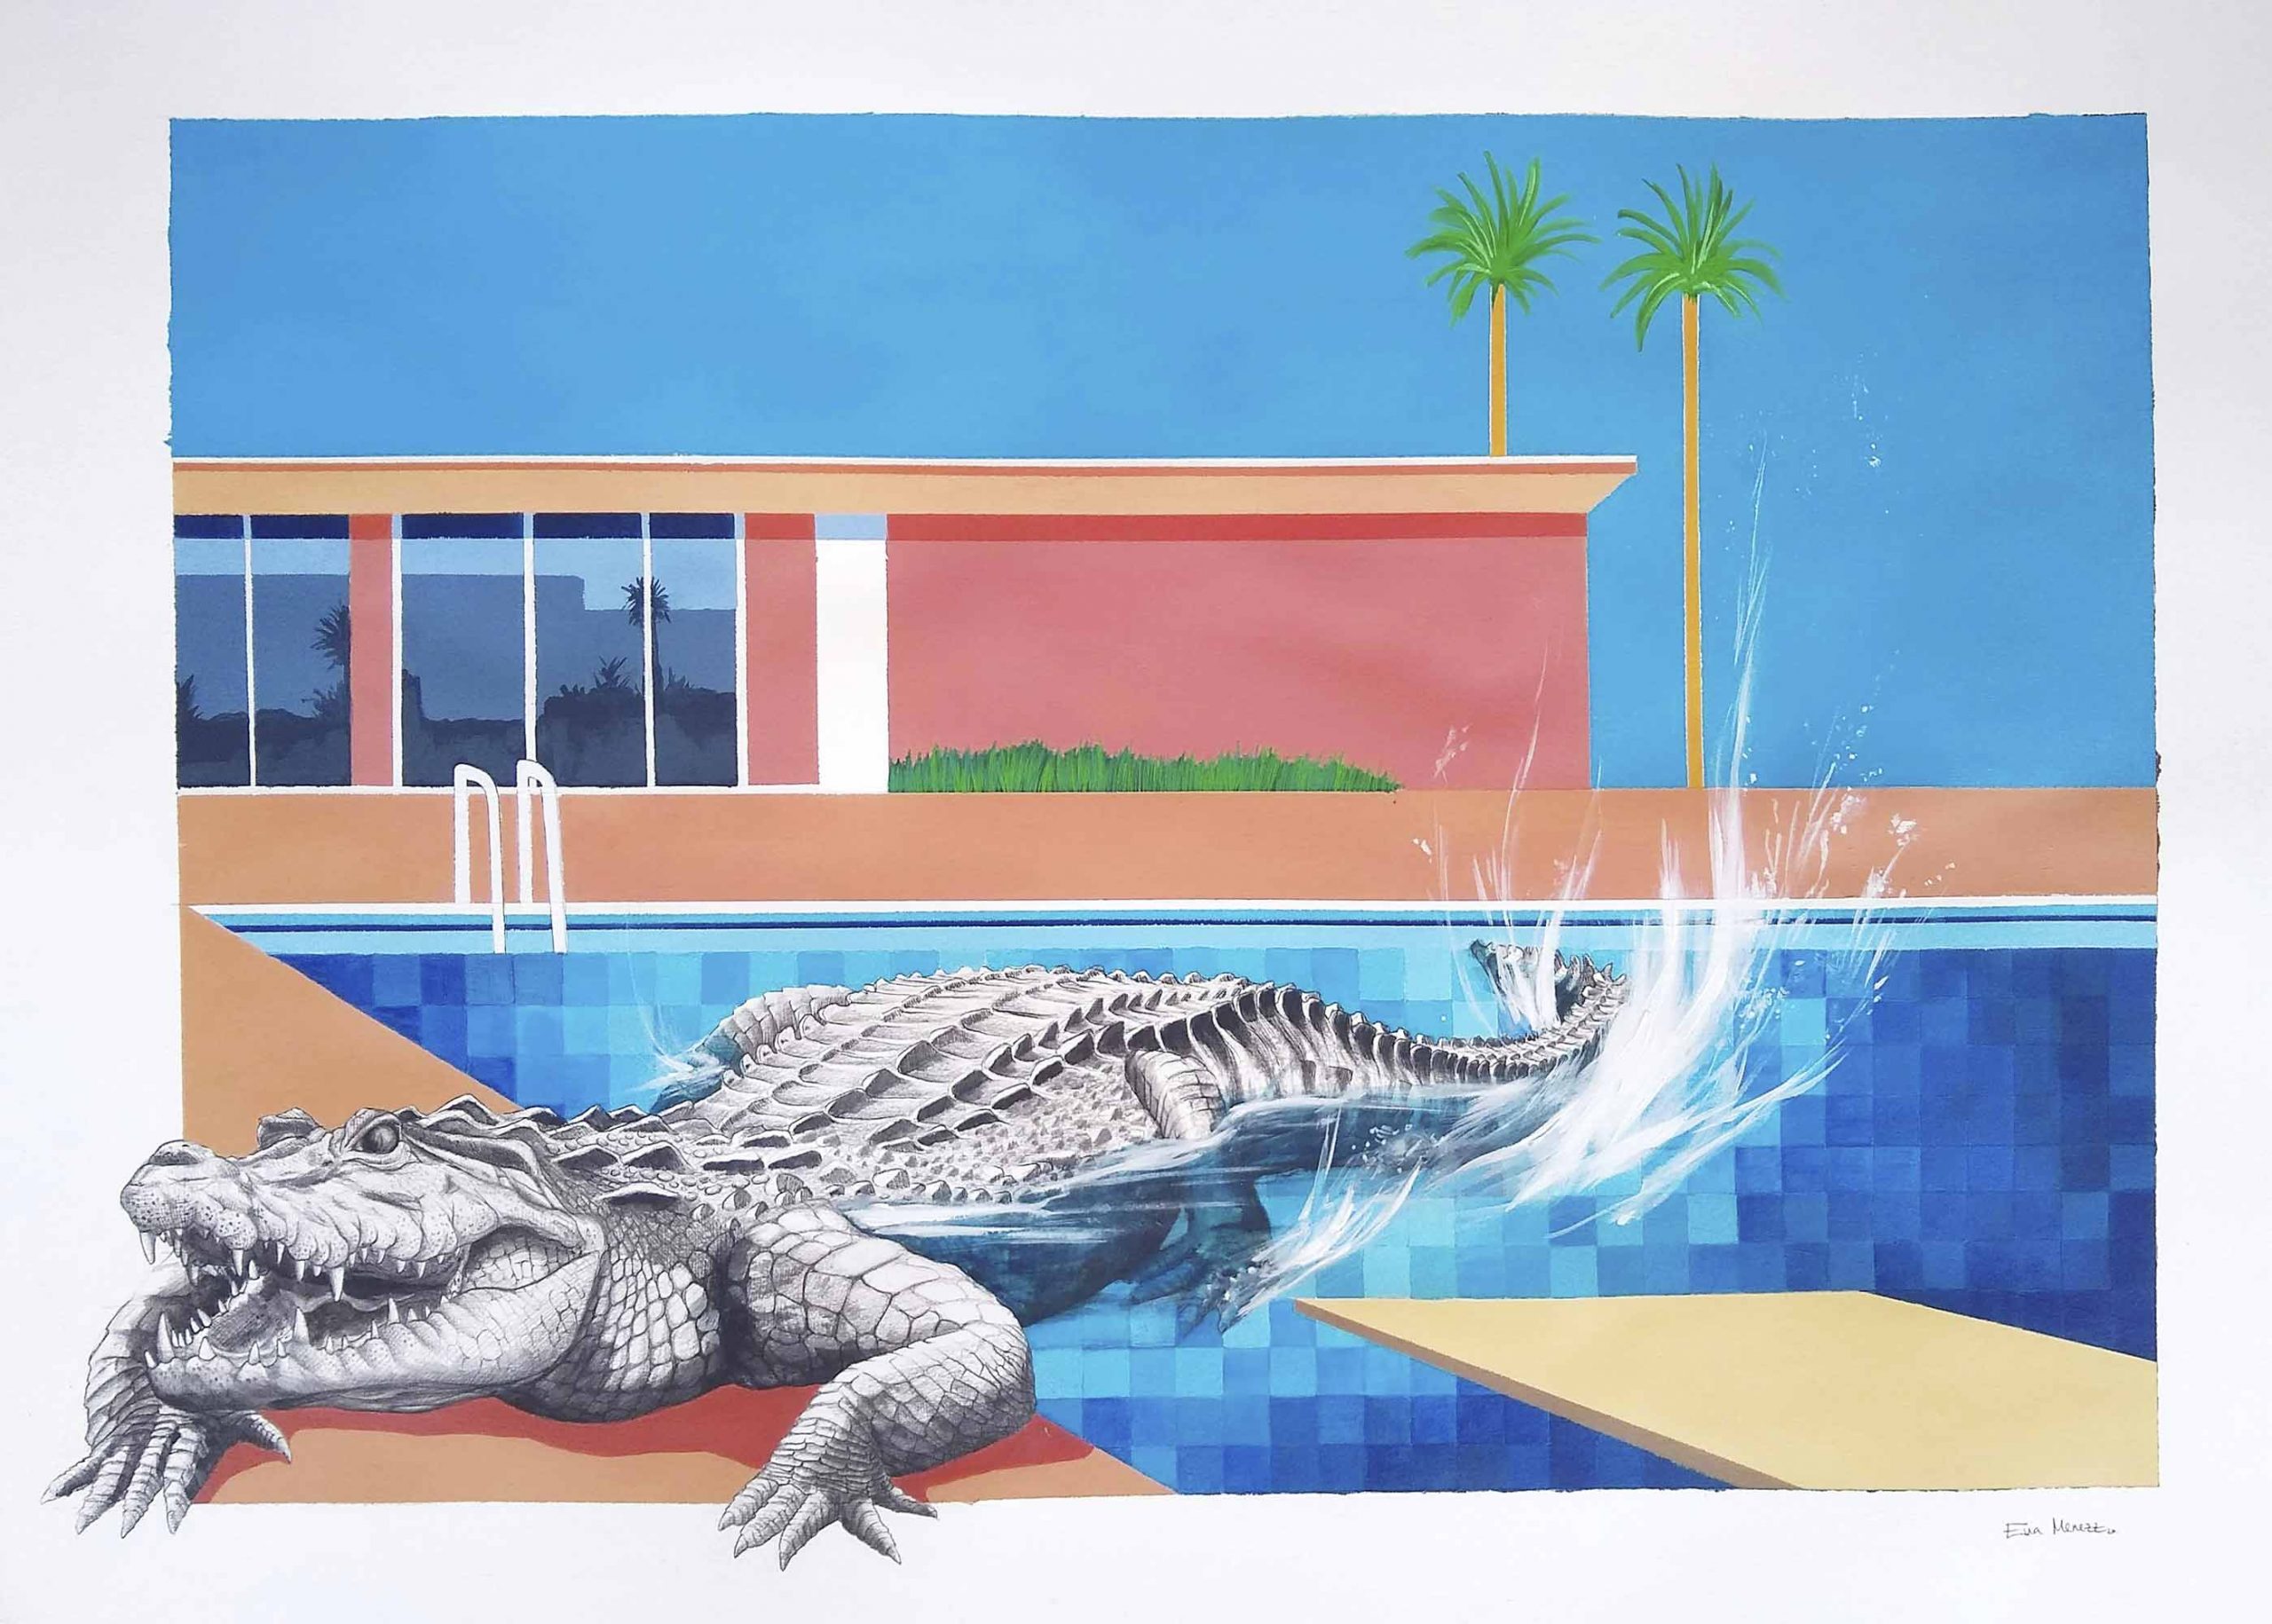 Eva Menezz - A bigger splash of the crocodile